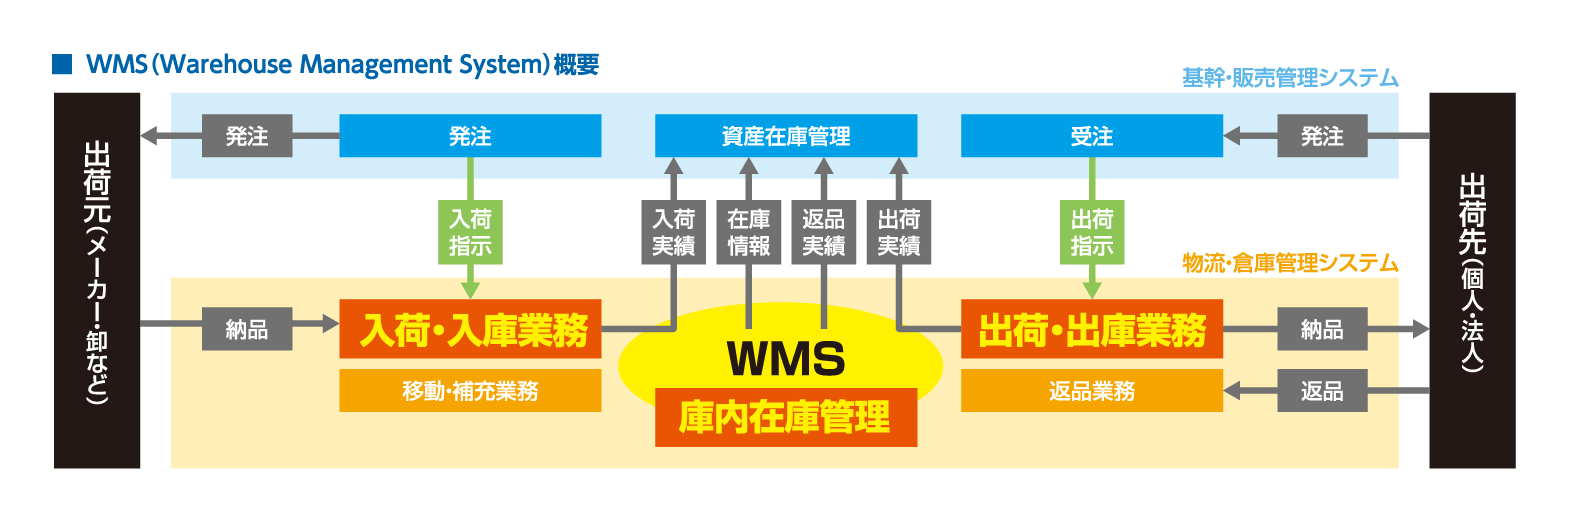 WMS解説図